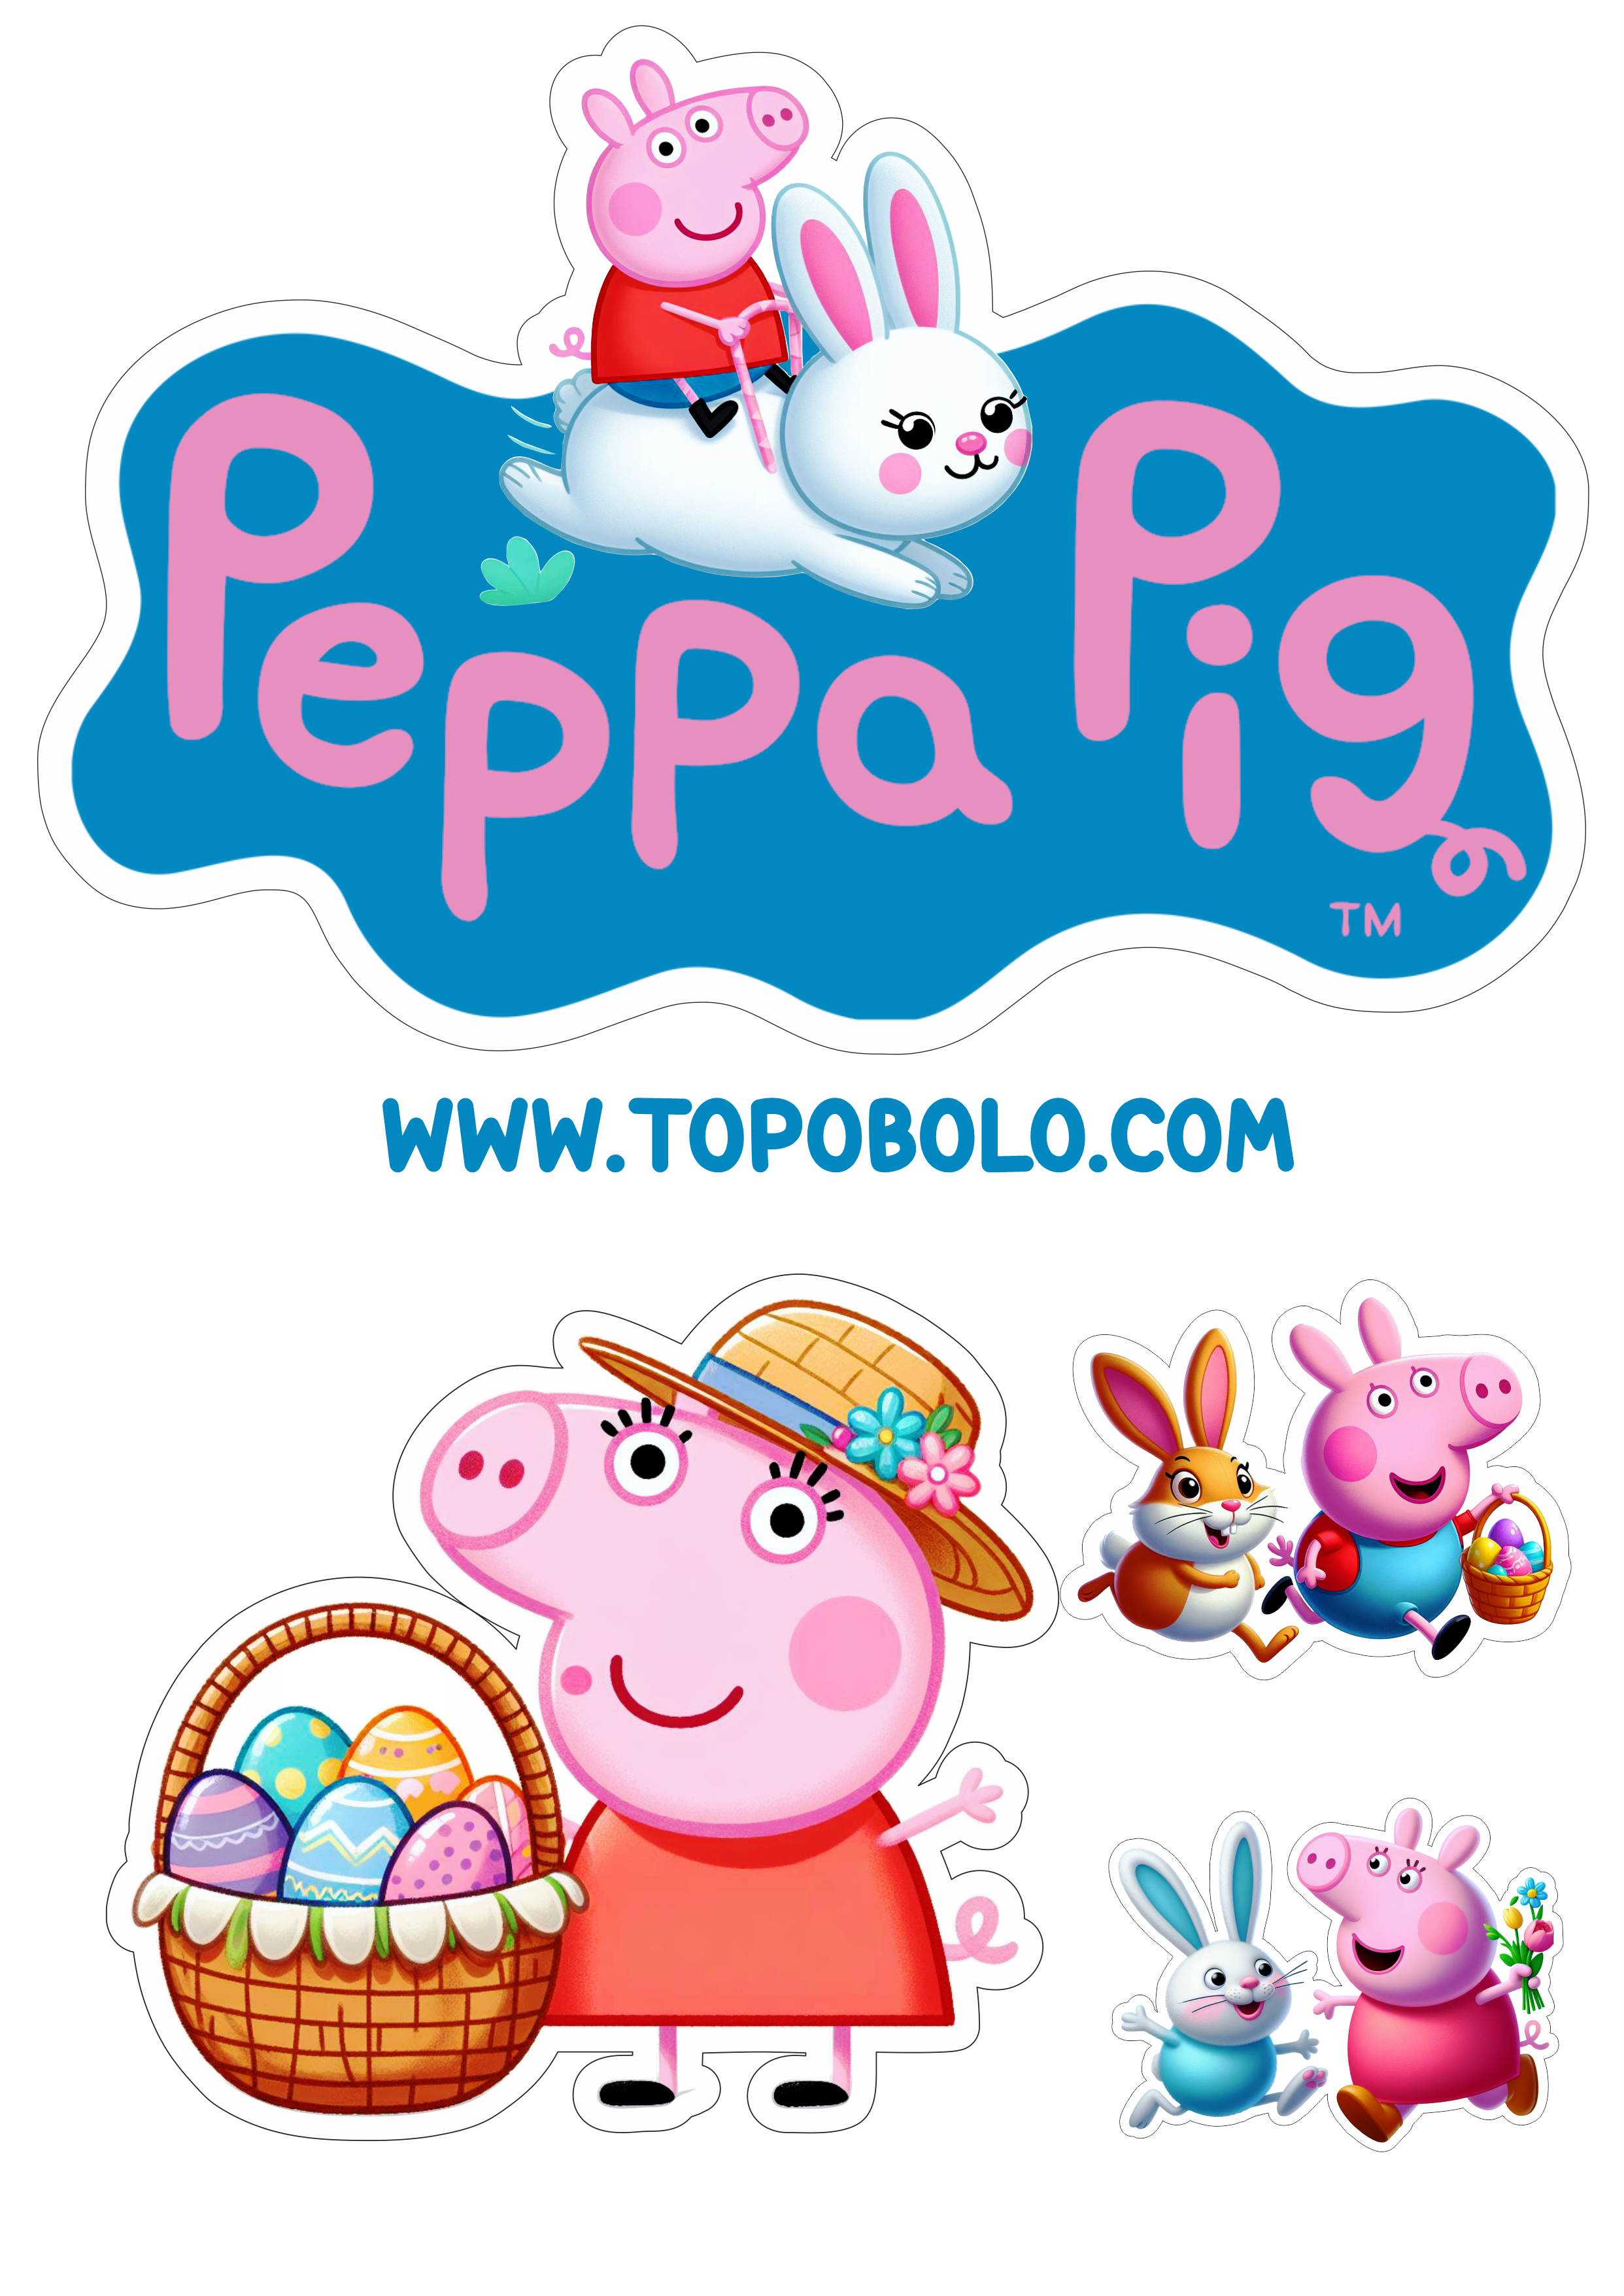 Topo de bolo Peppa Pig especial de páscoa aniversário infantil personalizado png